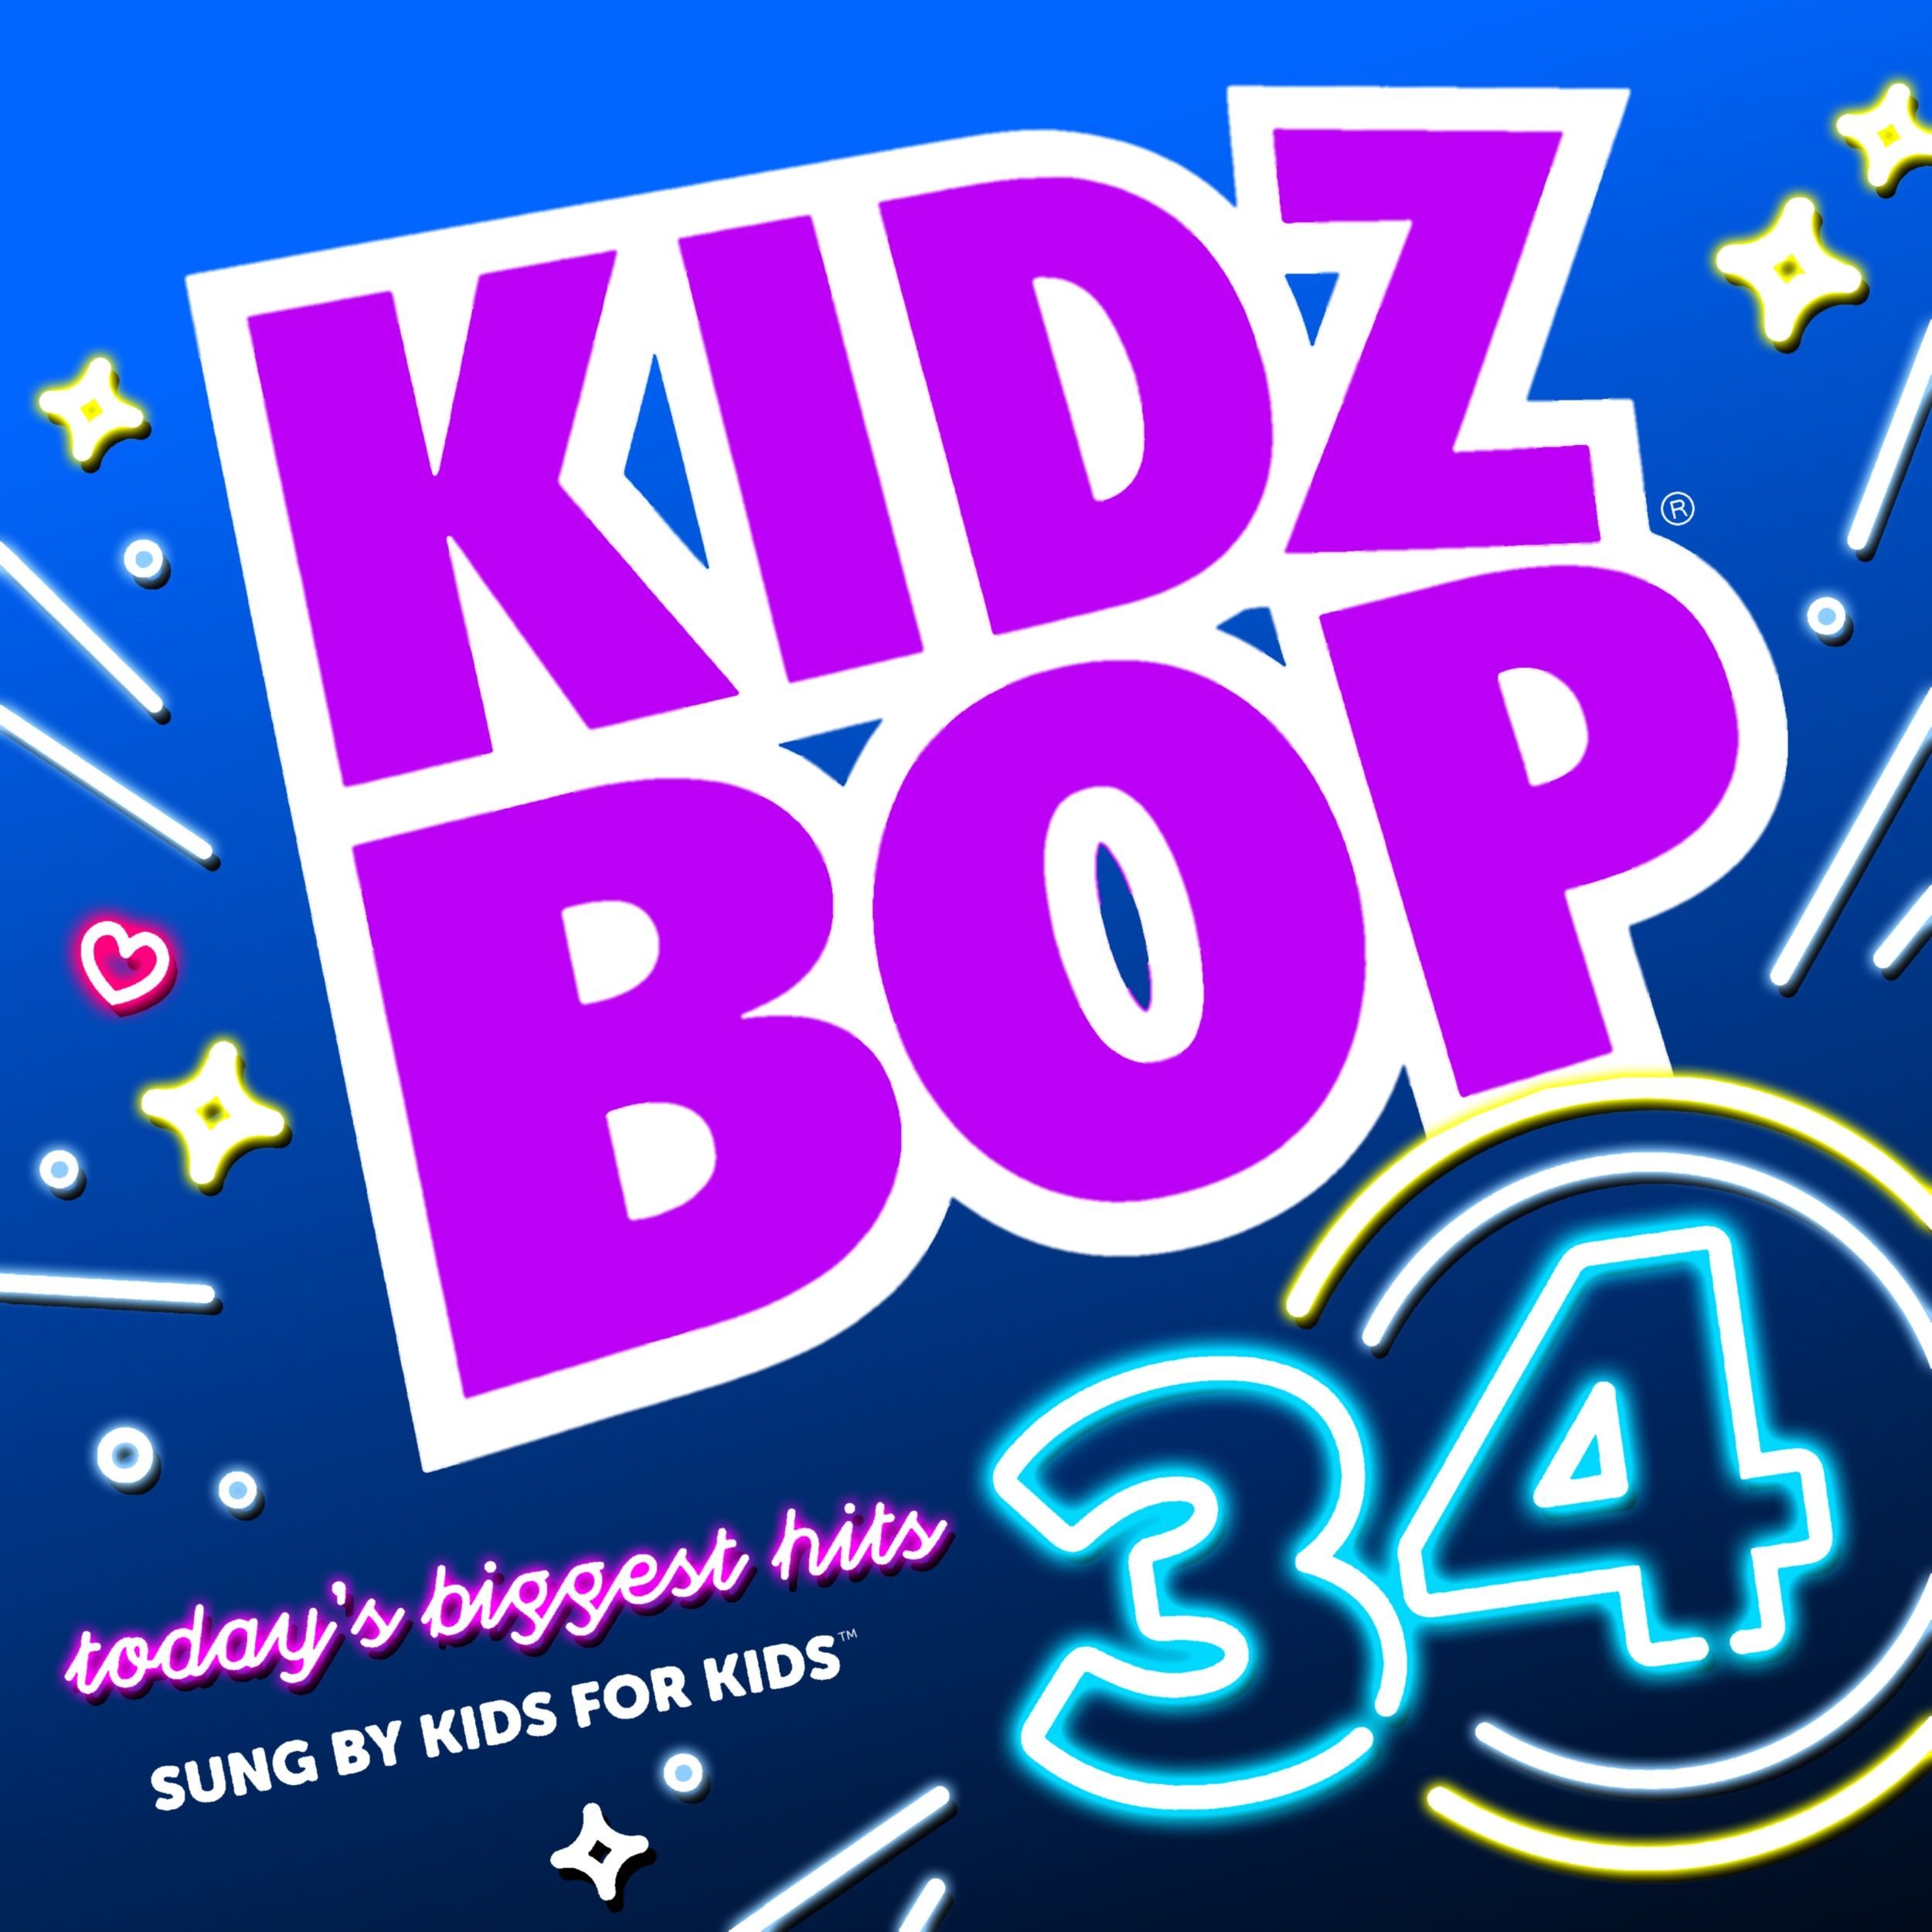 Kidz Bop 34 Bop Kids photo